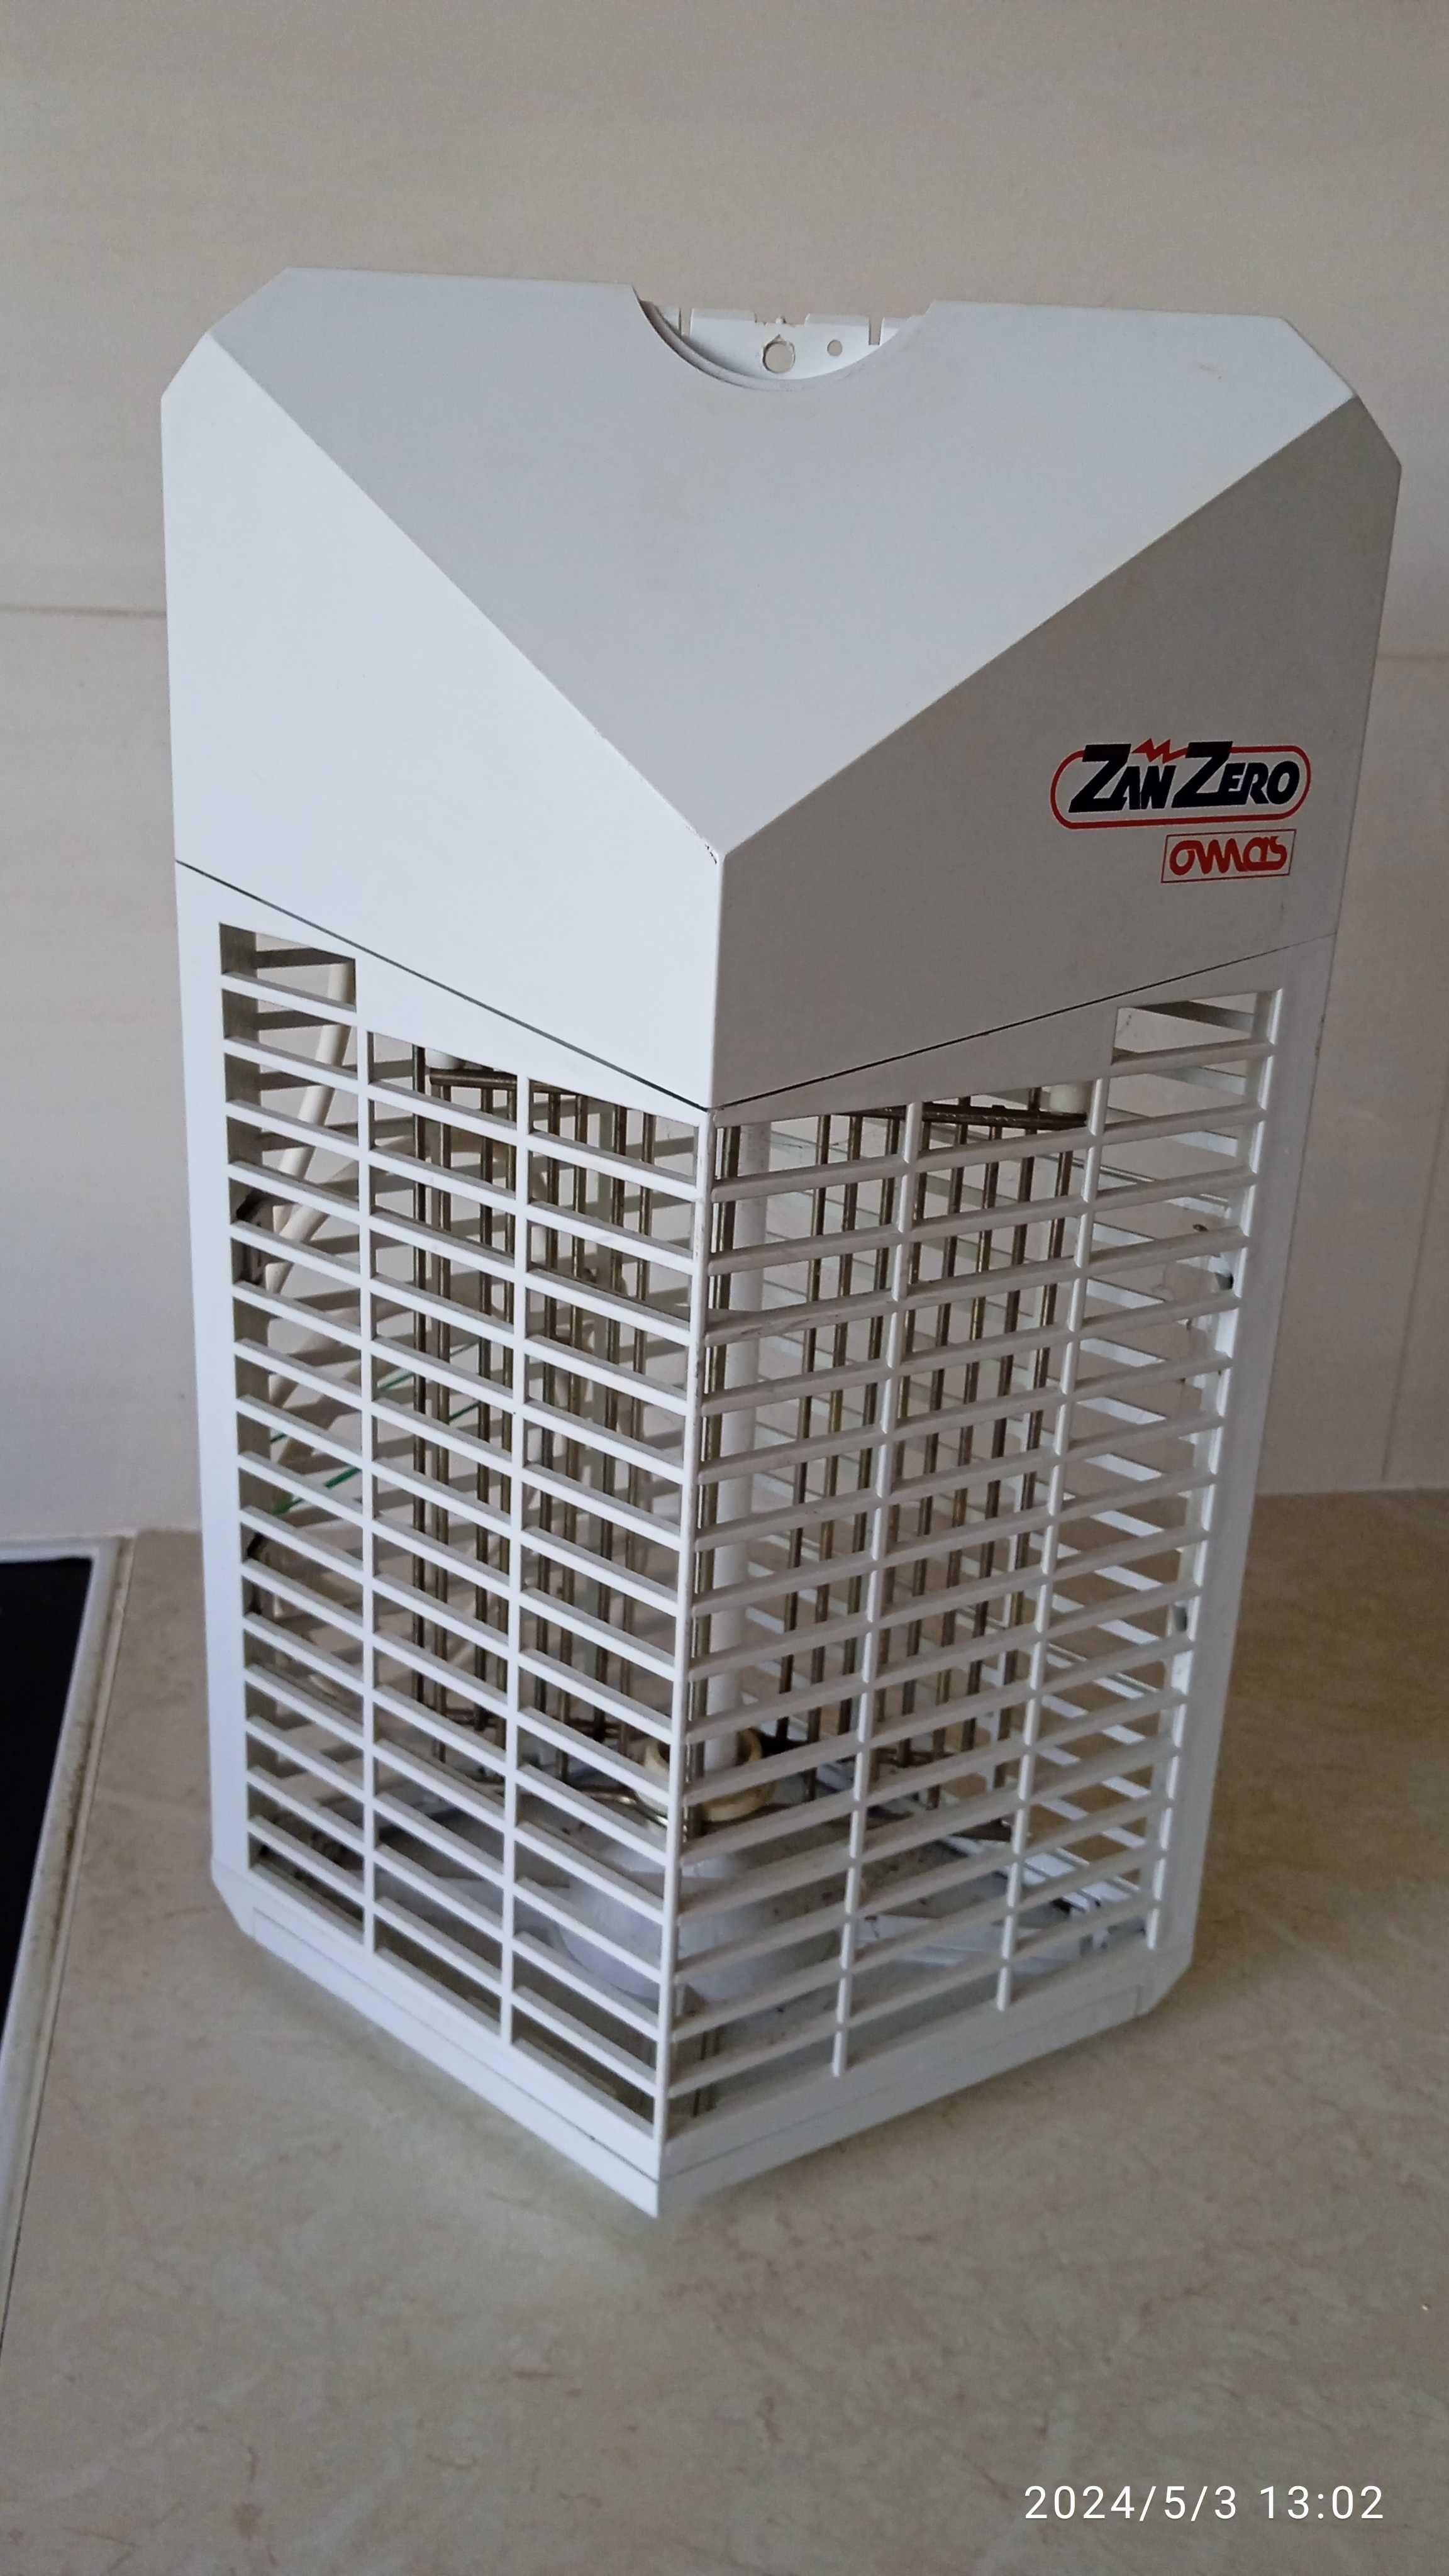 Lampa owadobójcza Made in ITALY. Zan Zero owas. 230 V, 50 Hz.